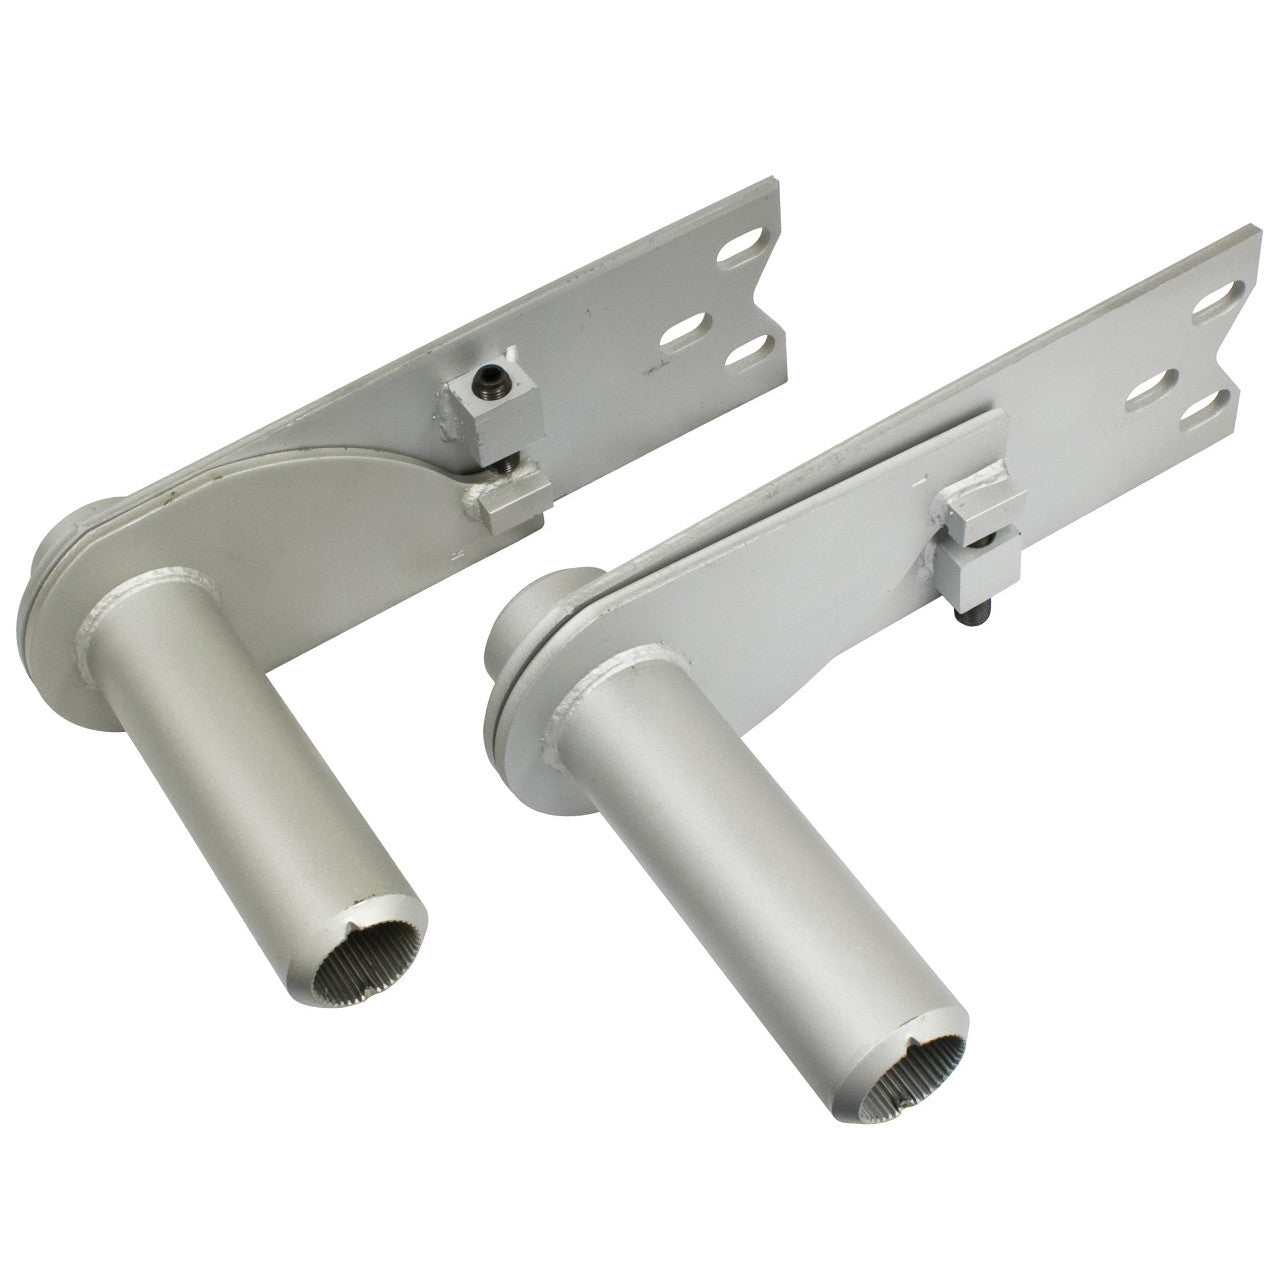 Empi 17-2674 Vw Rear Adjustable Irs Spring Plates For 26-9/16" Torsion Bar